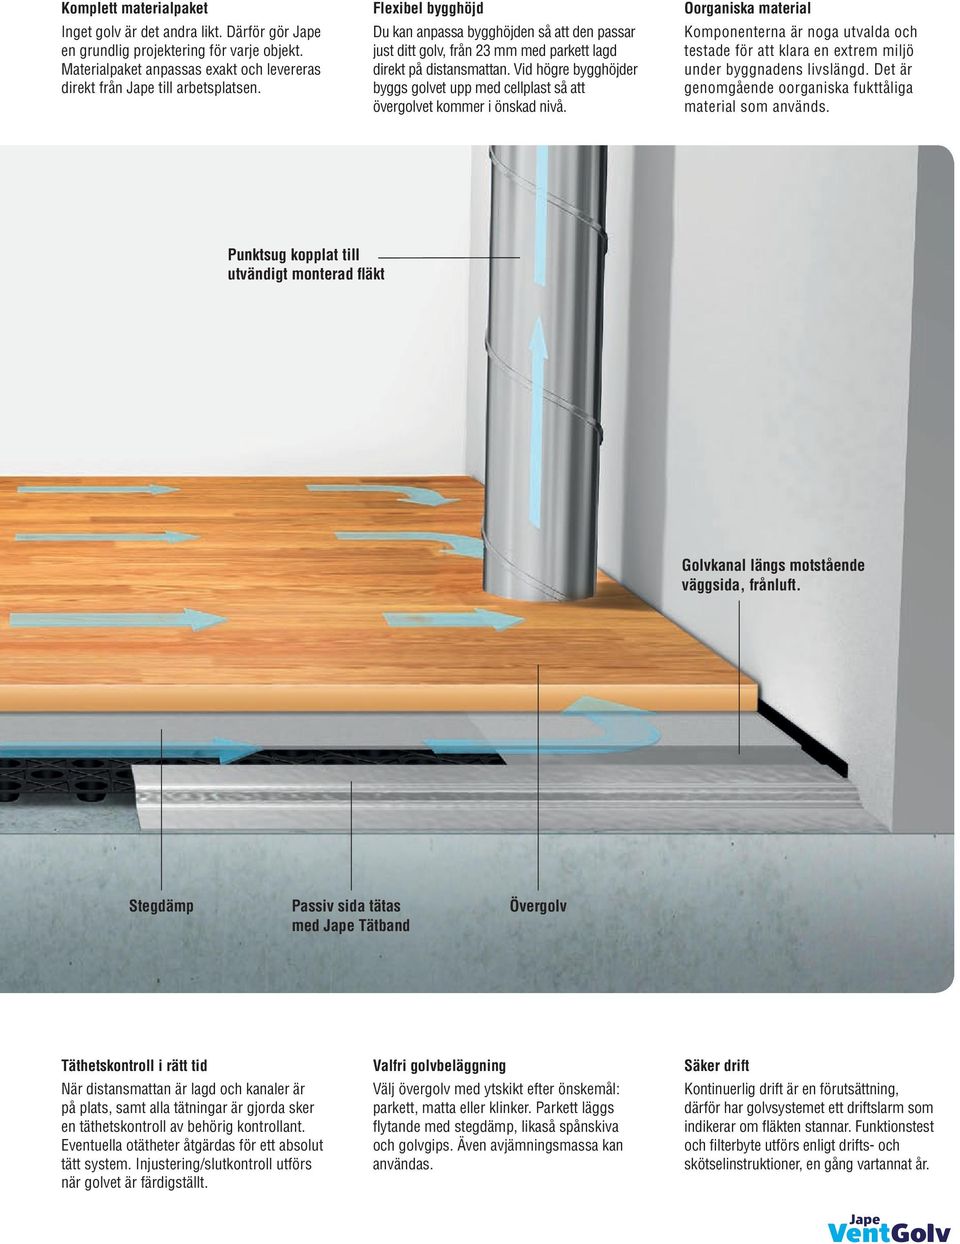 Hur du åtgärdar fukt, lukt och radon i golvet. - PDF Free Download